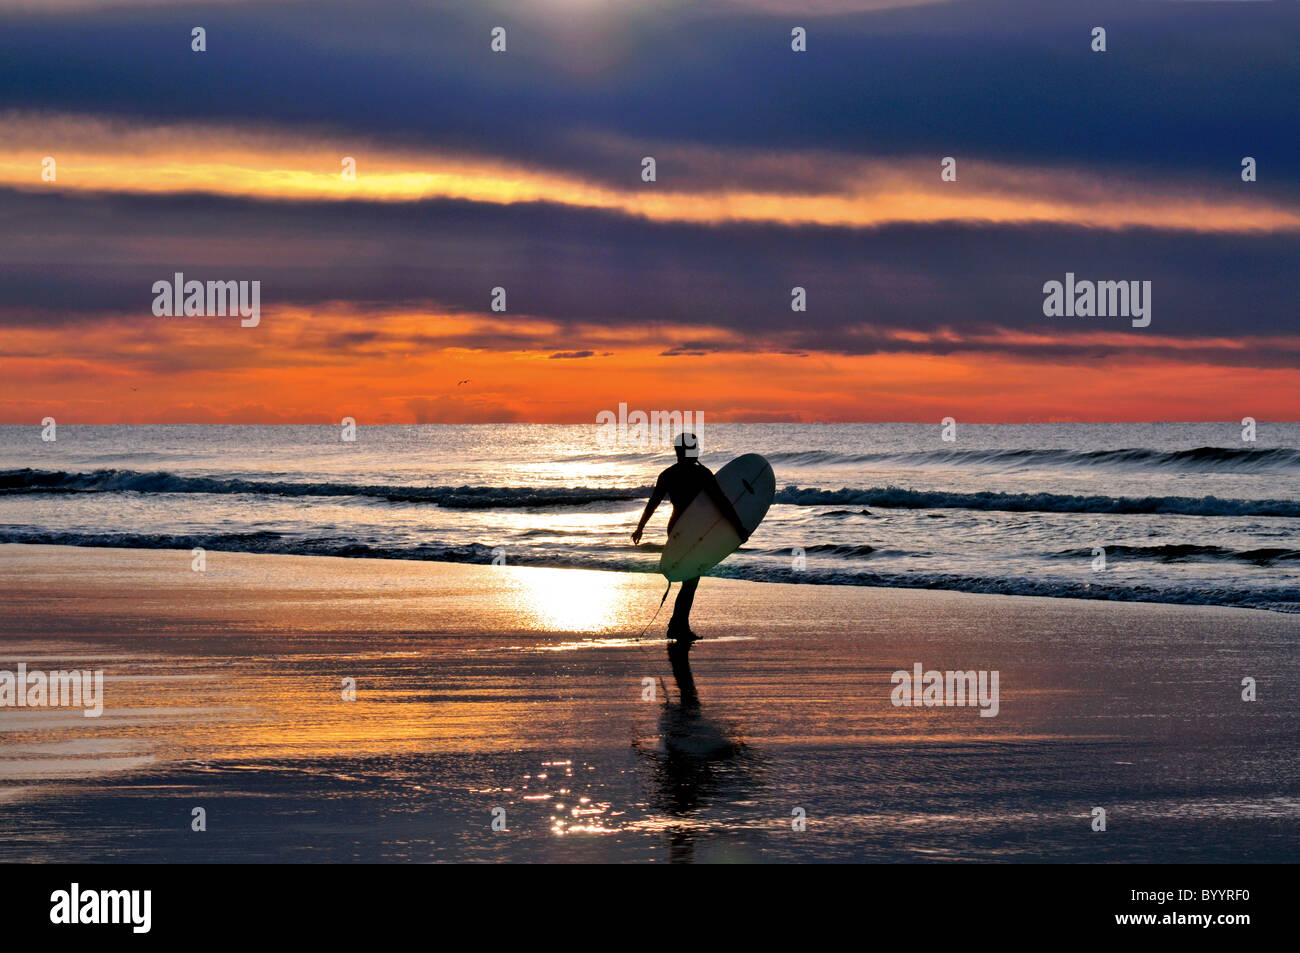 Le Portugal, l'Algarve : Surfer à la plage Praia do Amado Banque D'Images